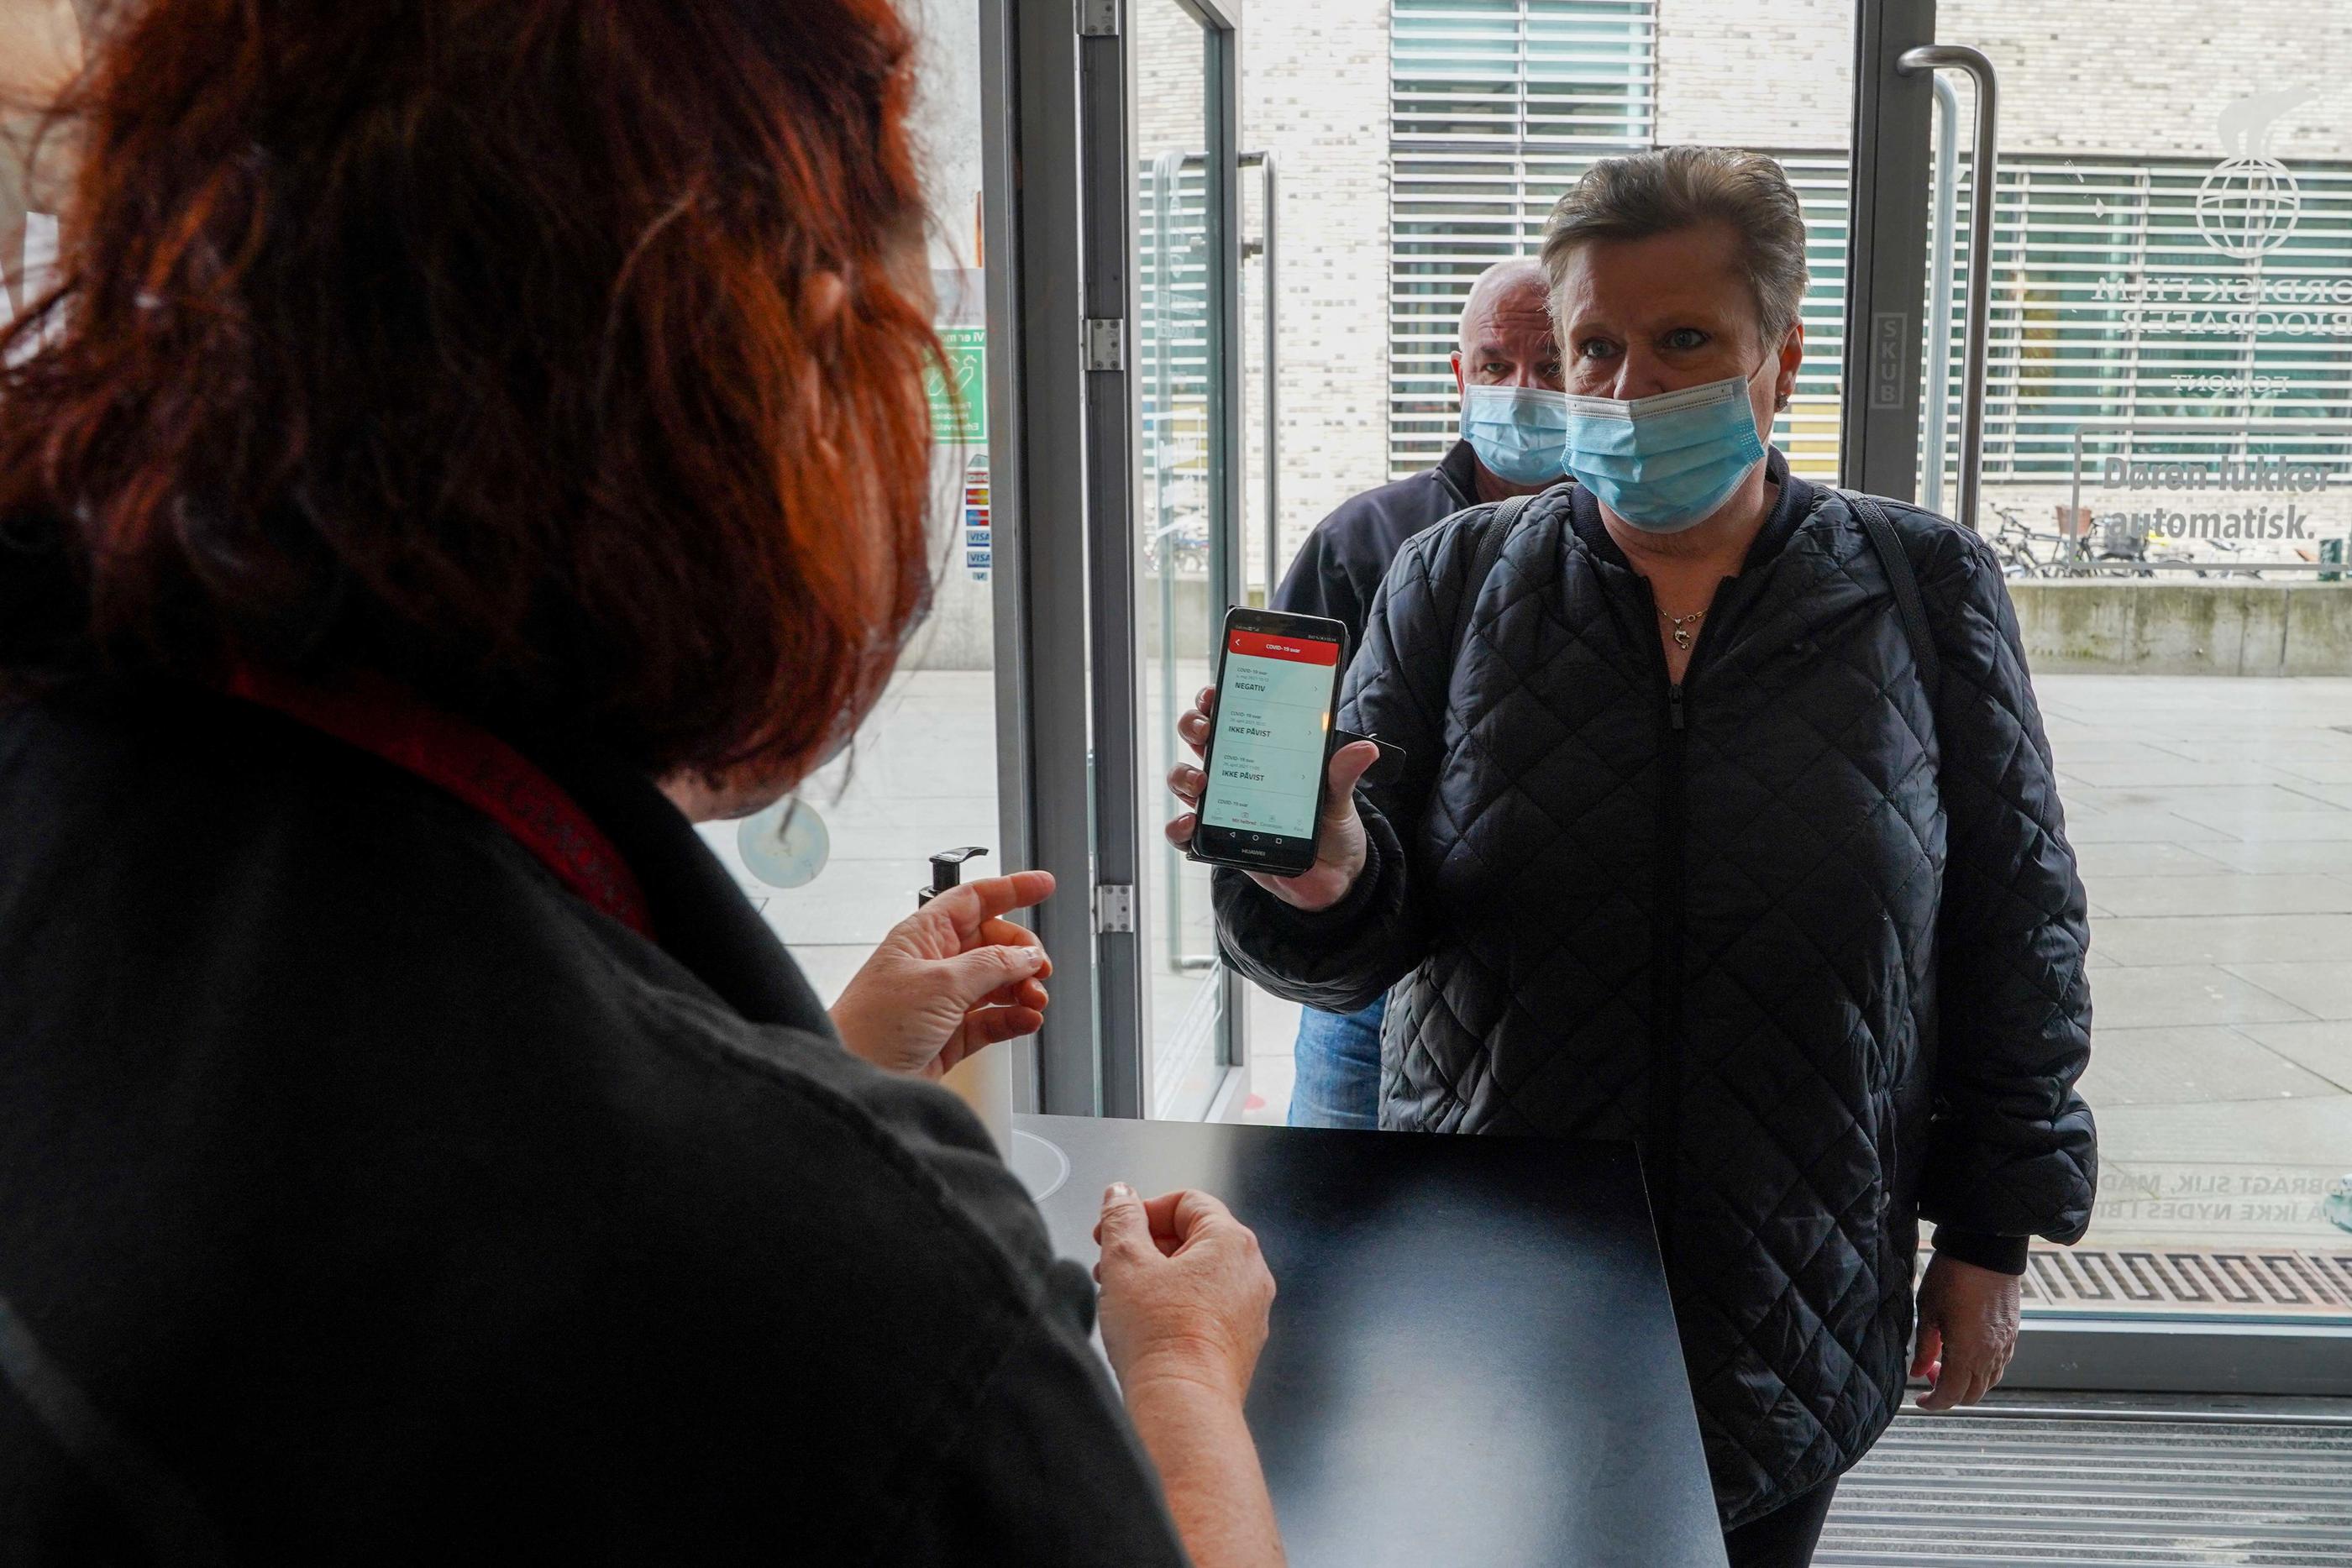 Une cliente montre son "coronapas", un pass sanitaire en vigueur au Danemark, à l'entrée d'un cinéma. AFP